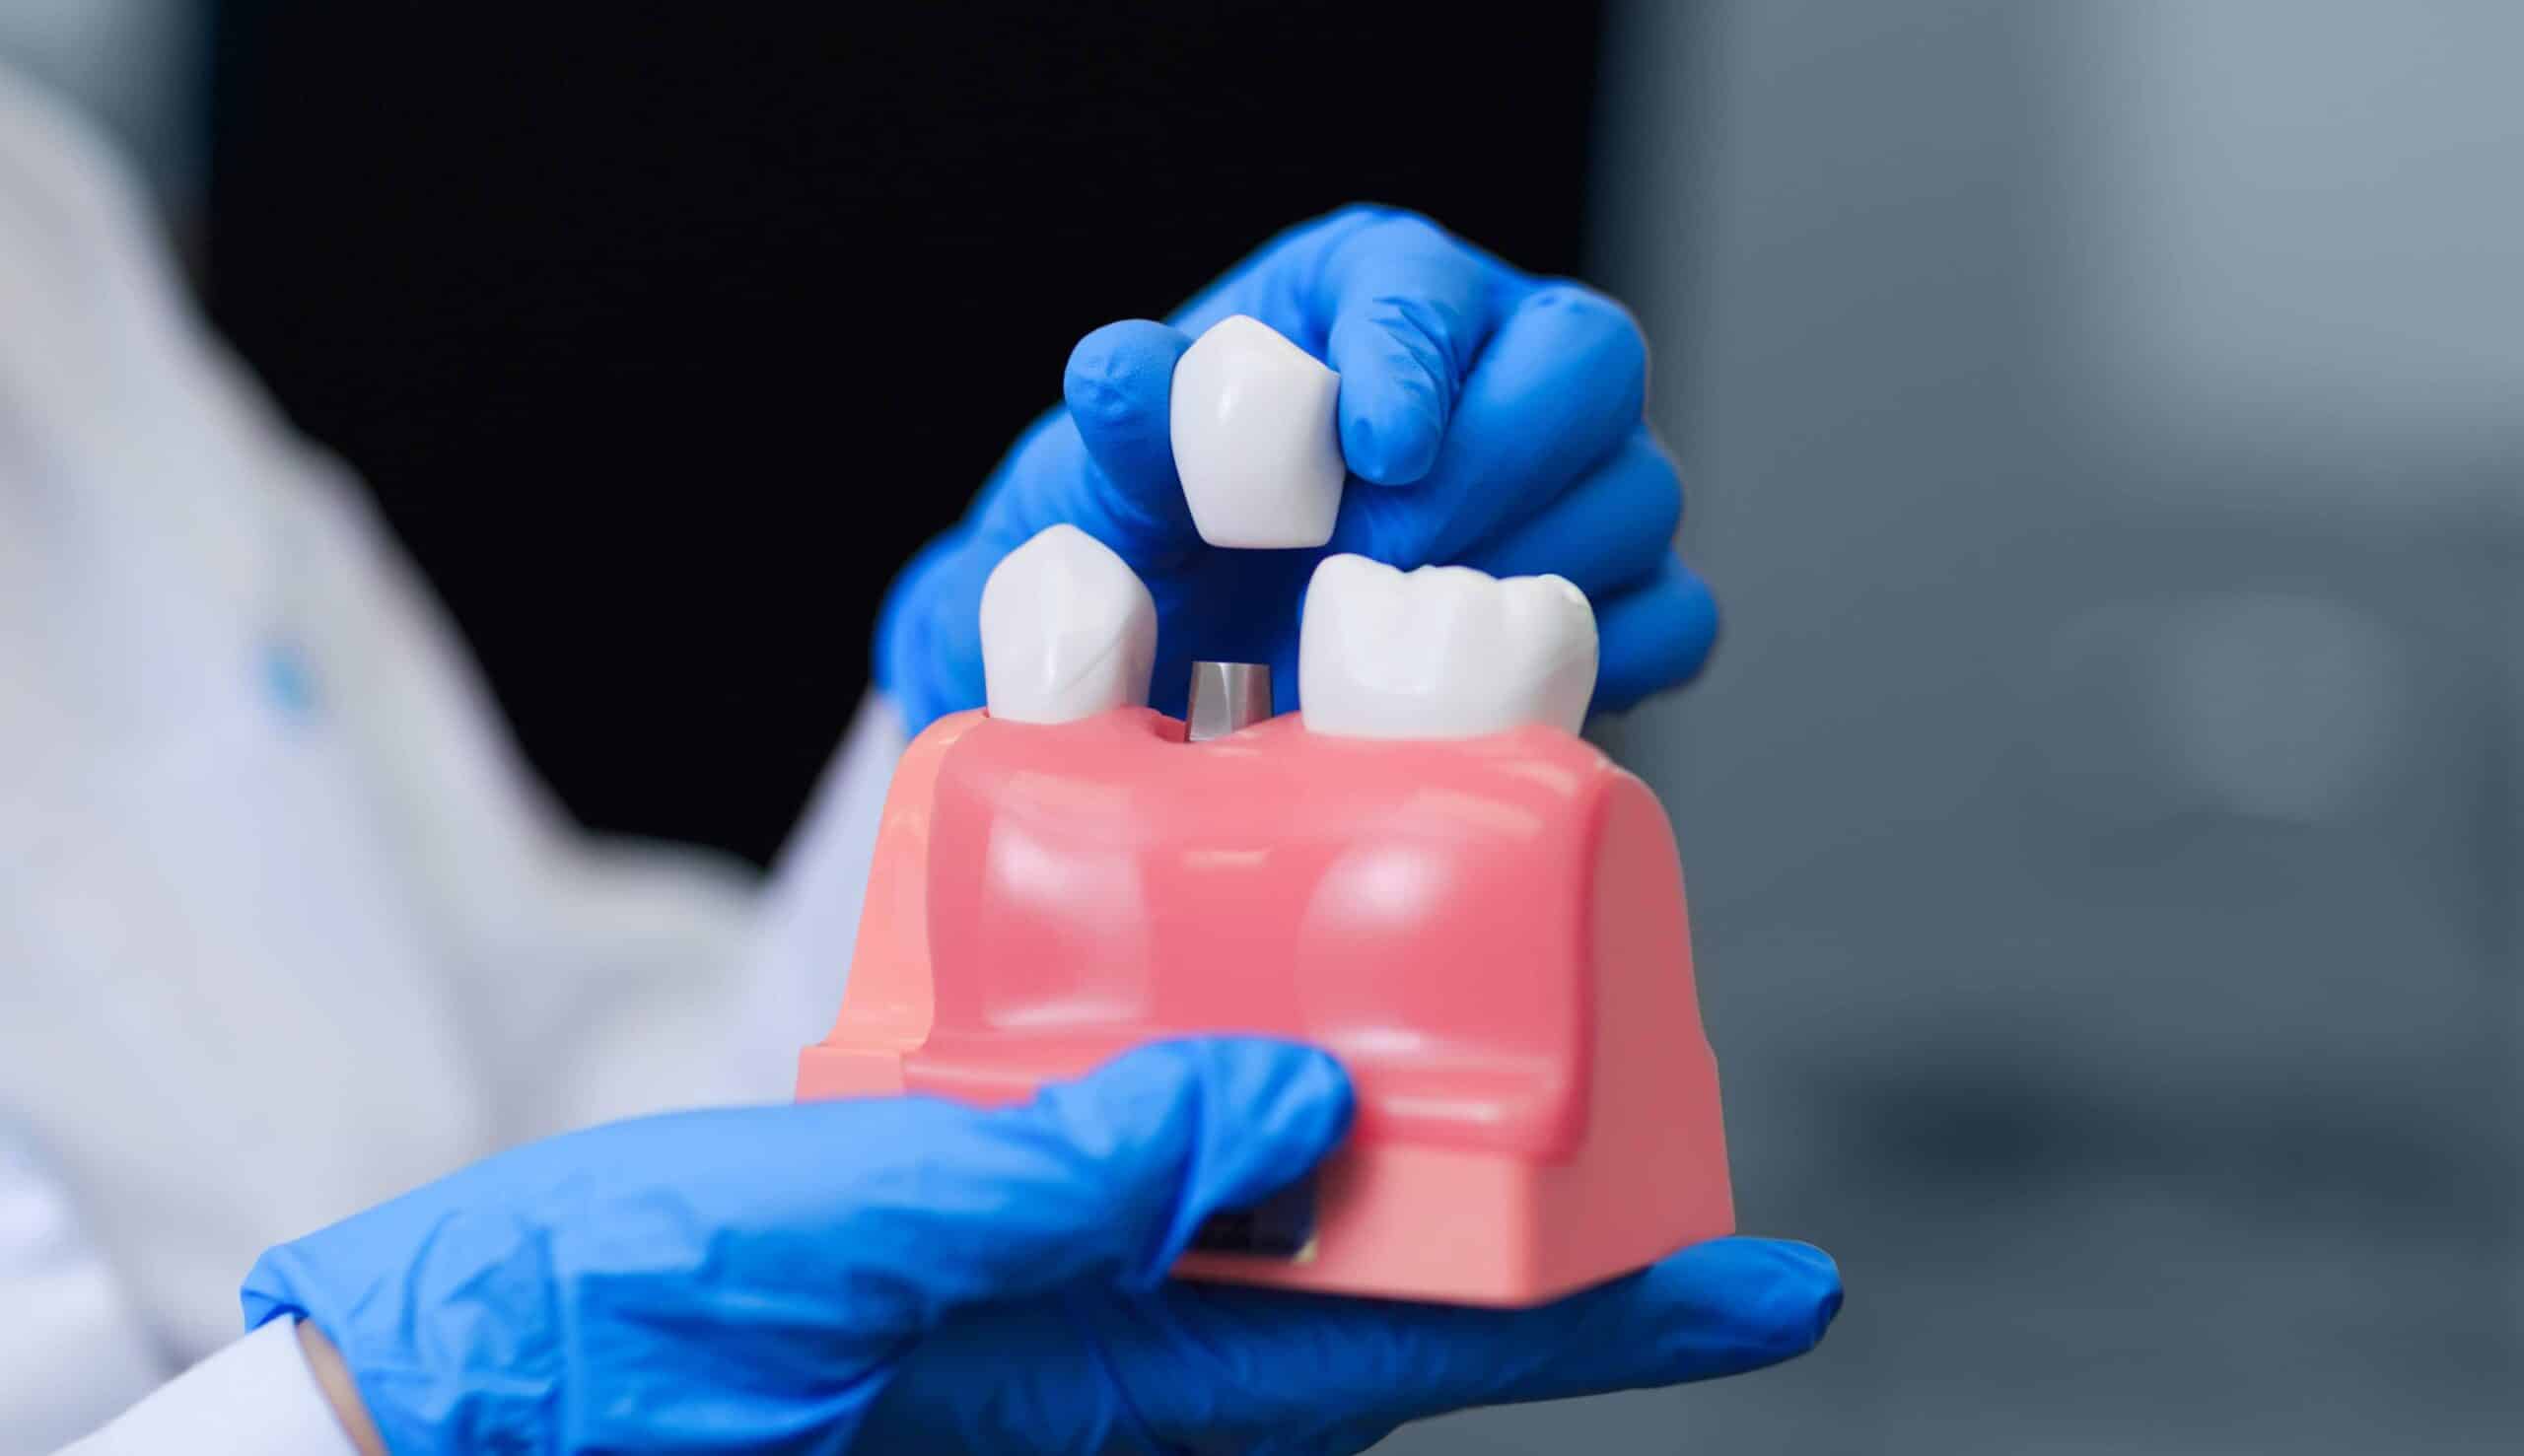 La pose d'un implant dentaire nécessite-t-elle une anesthésie ? | Clinique dentaire Sana Oris | Paris 8